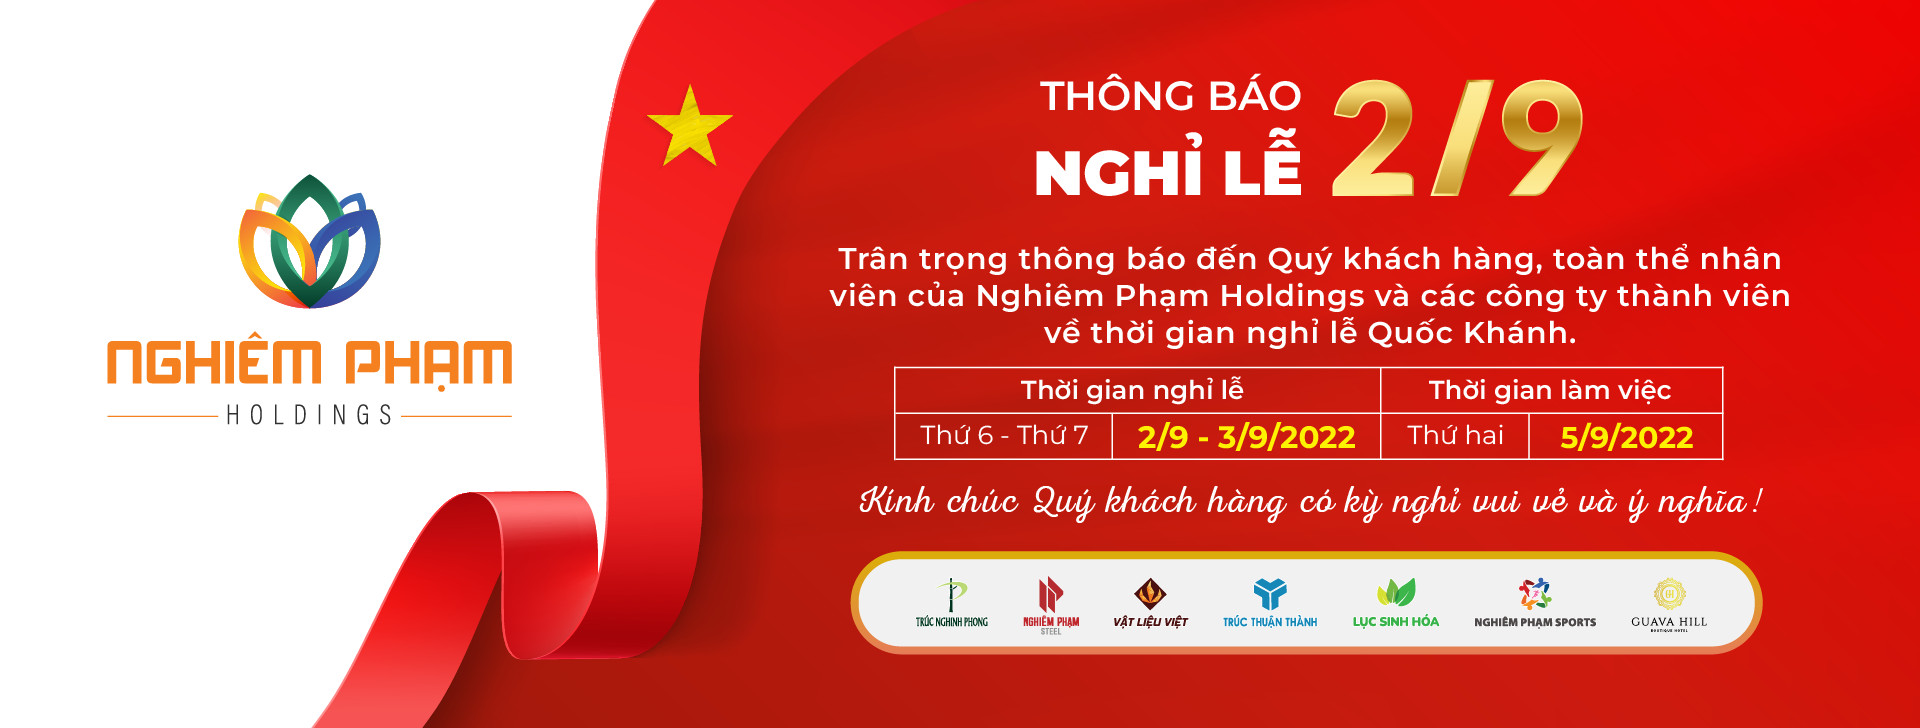 Nghiêm Phạm Holdings thông báo nghỉ lễ Quốc Khánh Việt Nam – 02/09/2022